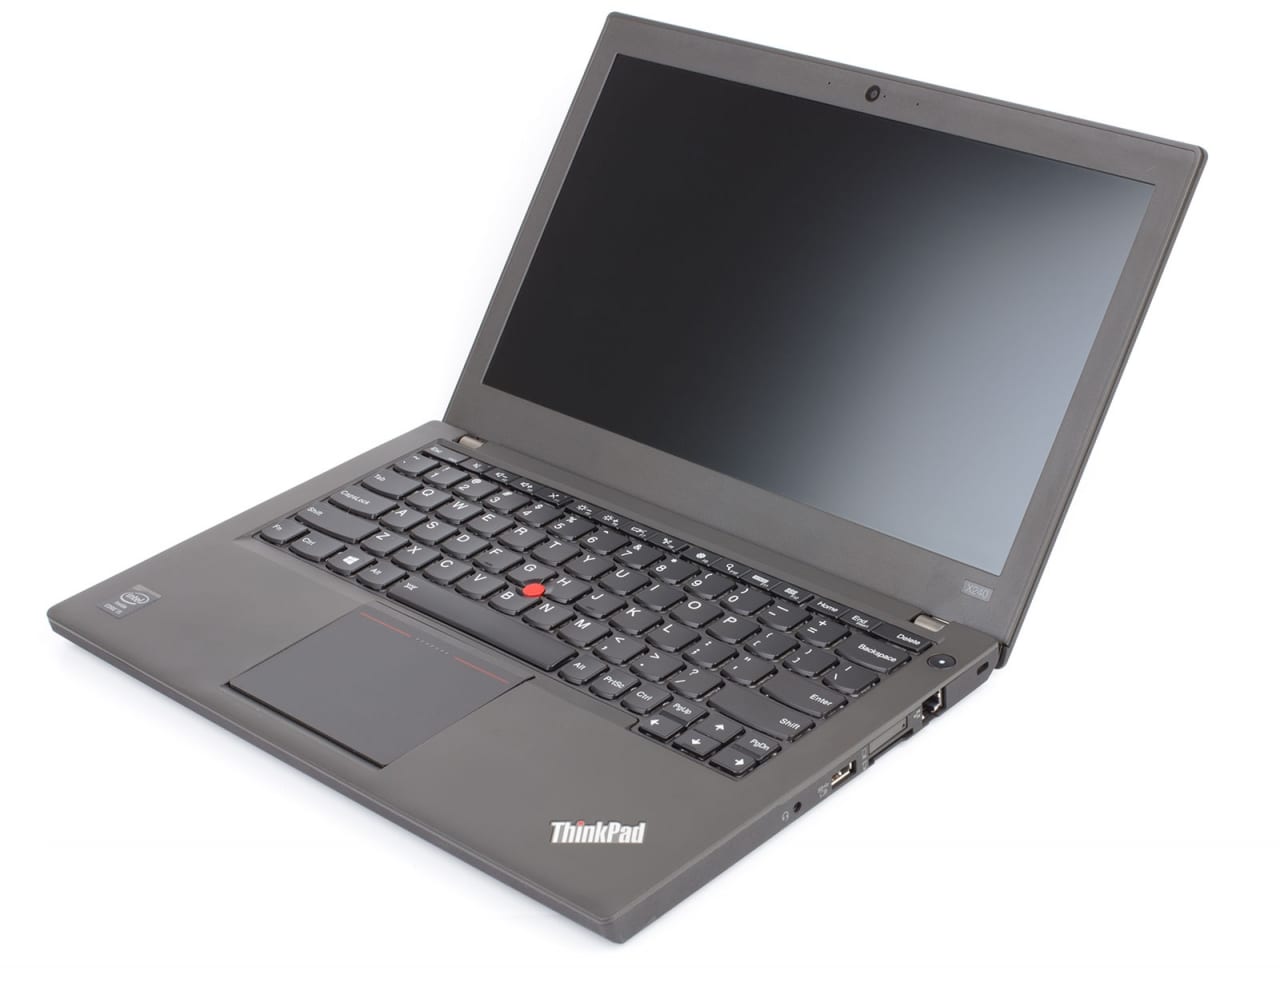 Đánh giá Thinkpad X240- dòng máy tính khởi đầu cho xu hướng macbook hóa của lenovo